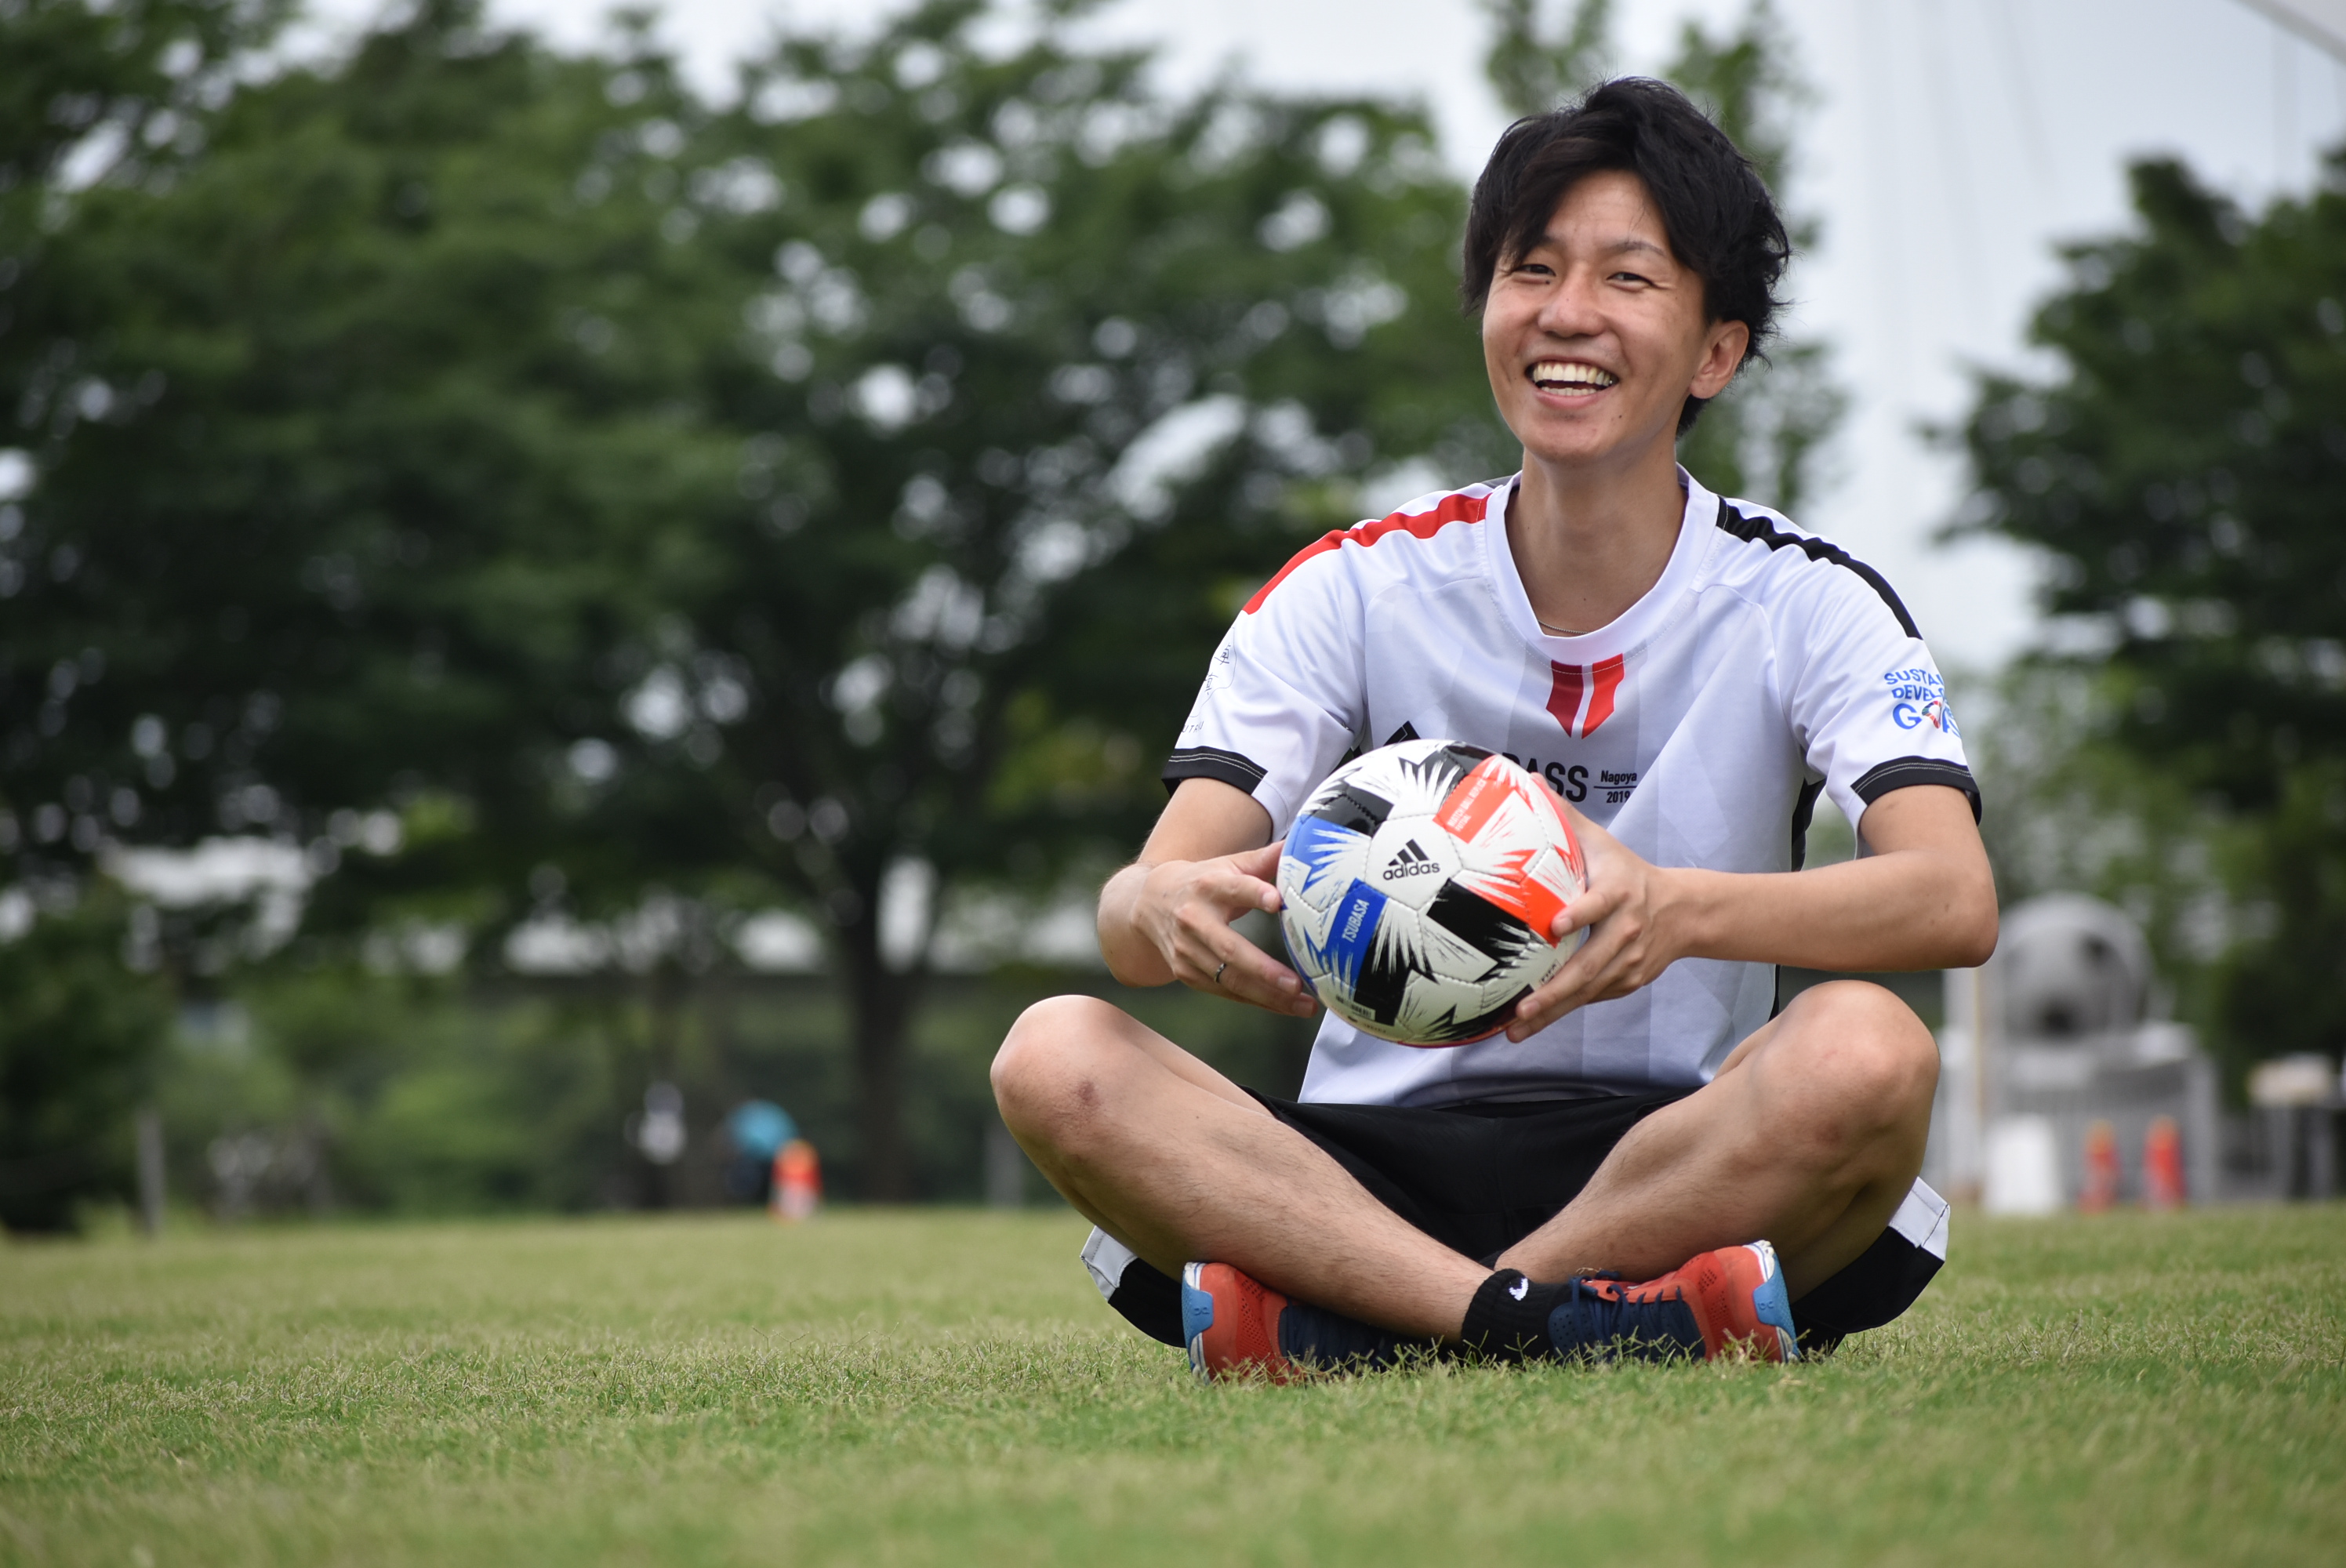 藤本 真央 Mao Fujimoto 世界へサッカーと笑顔を届ける Pass Project Nagoya